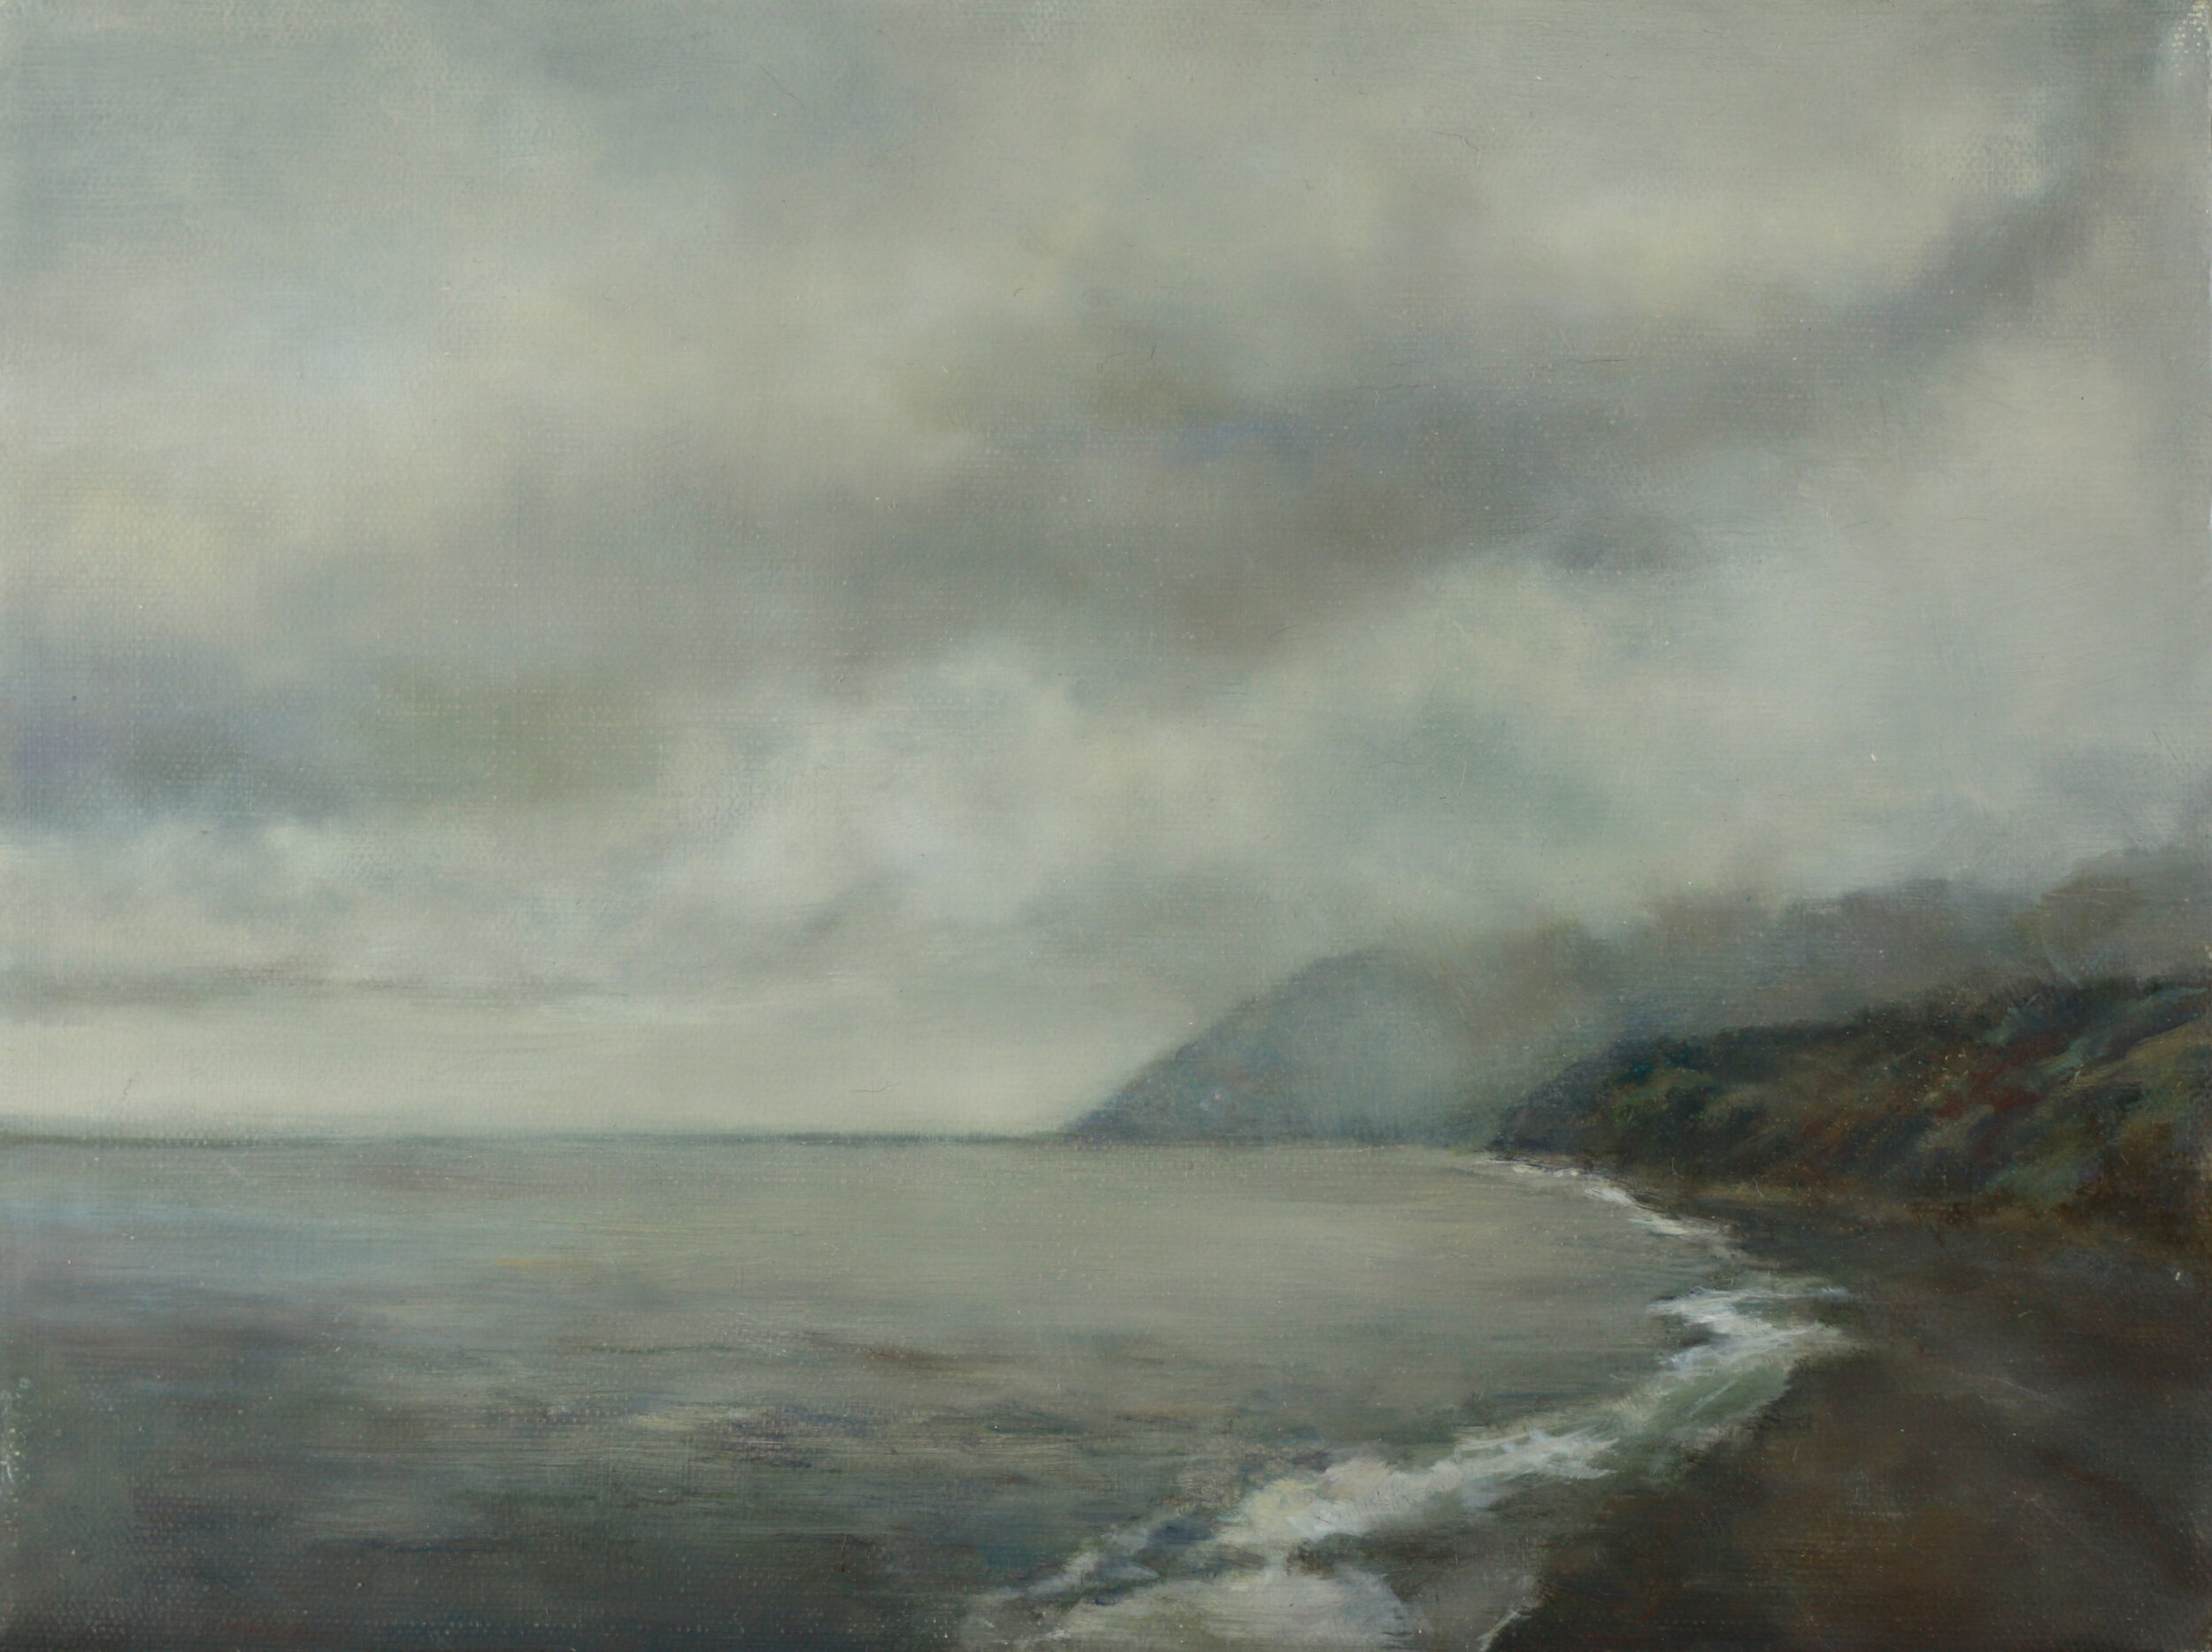  Mary Lou Schempf  Cape Breton Fog,  9” x 12”, oil on canvas   (private collection)  